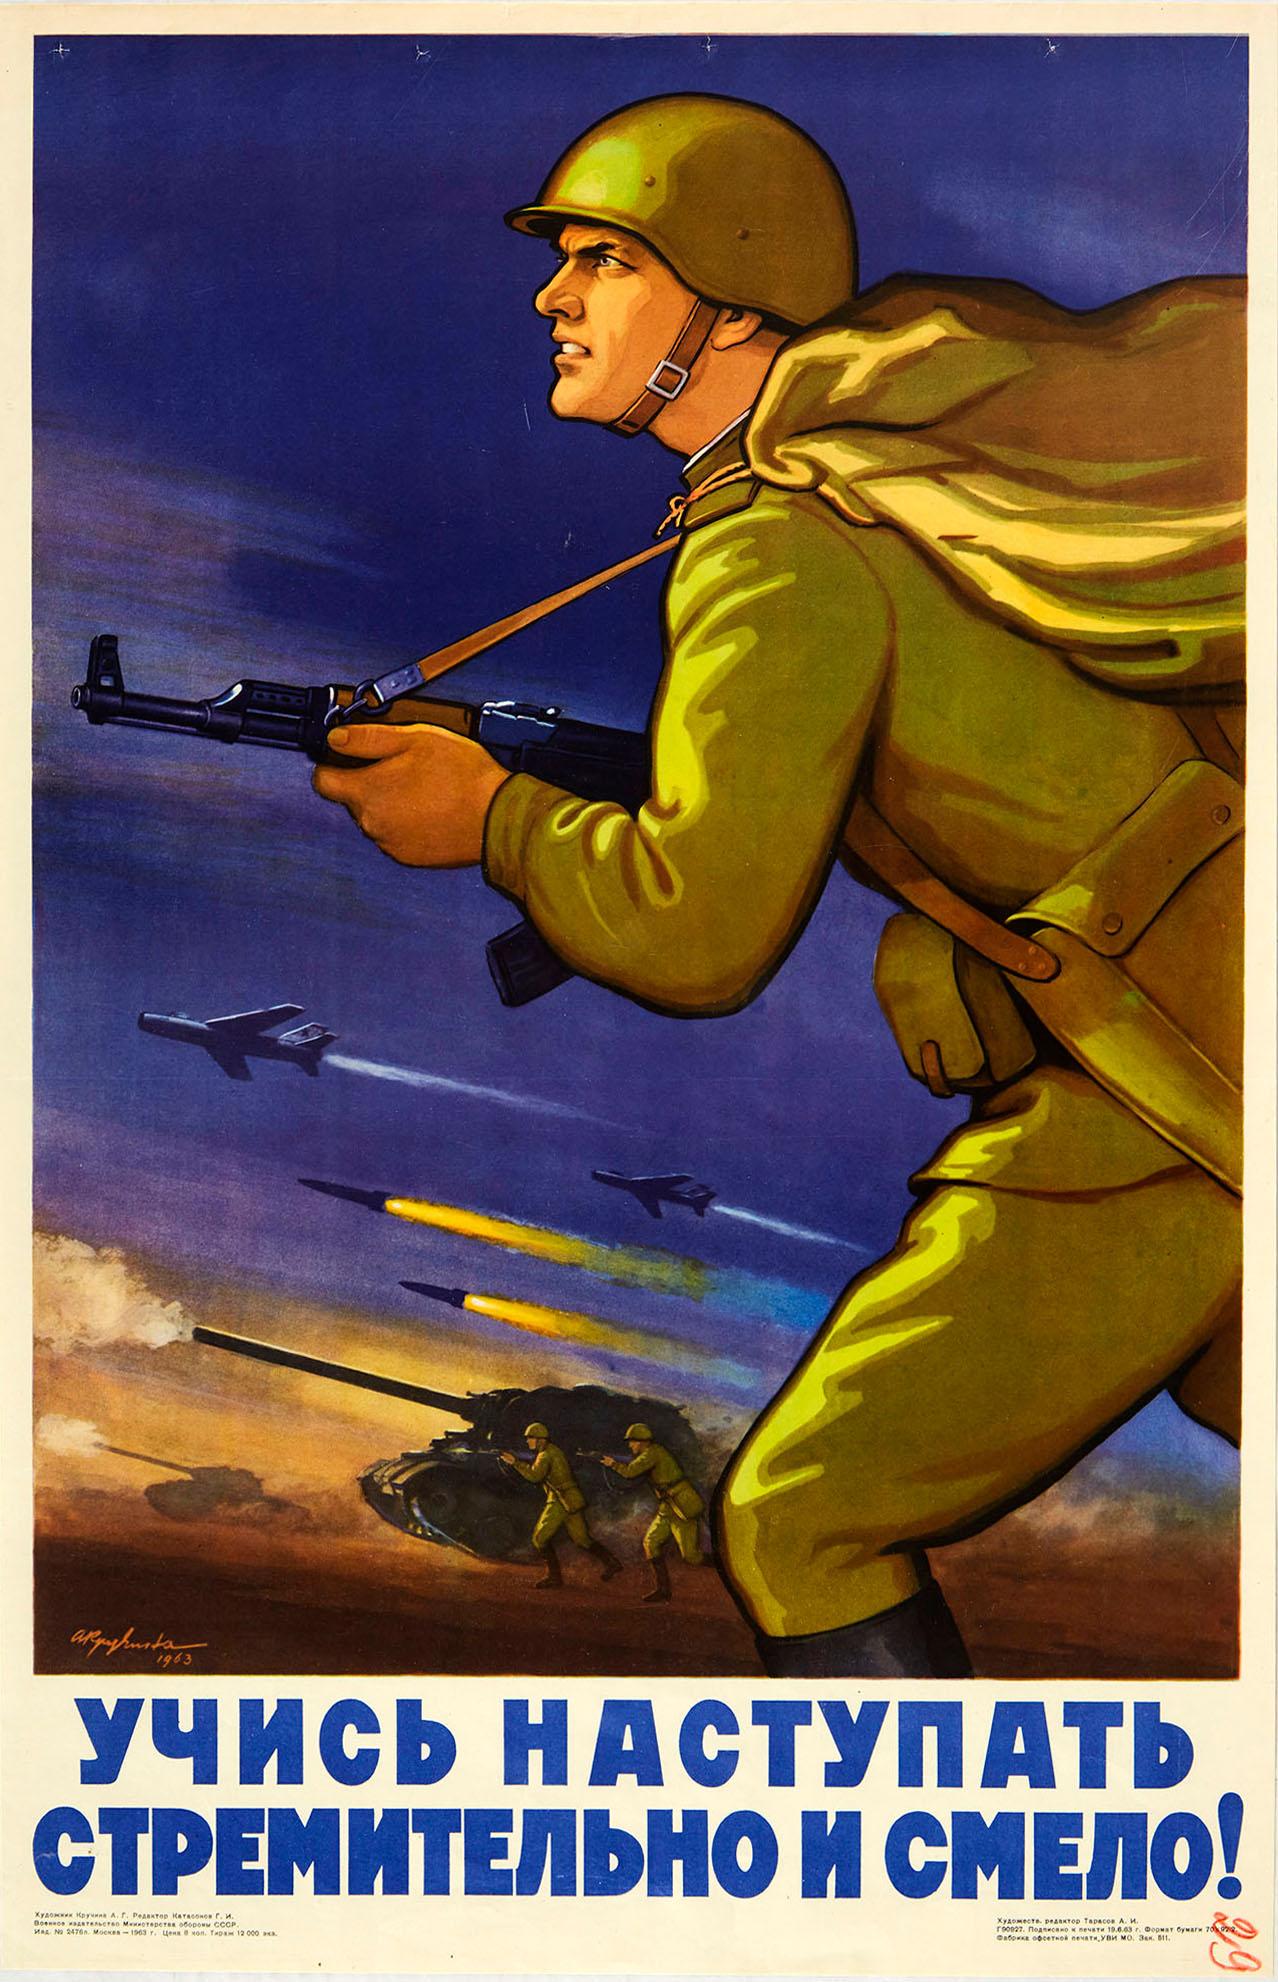 Print A. Kruchina - Affiche vintage originale de propagande soviétique pendant la guerre froide, apprendre à progresser...!